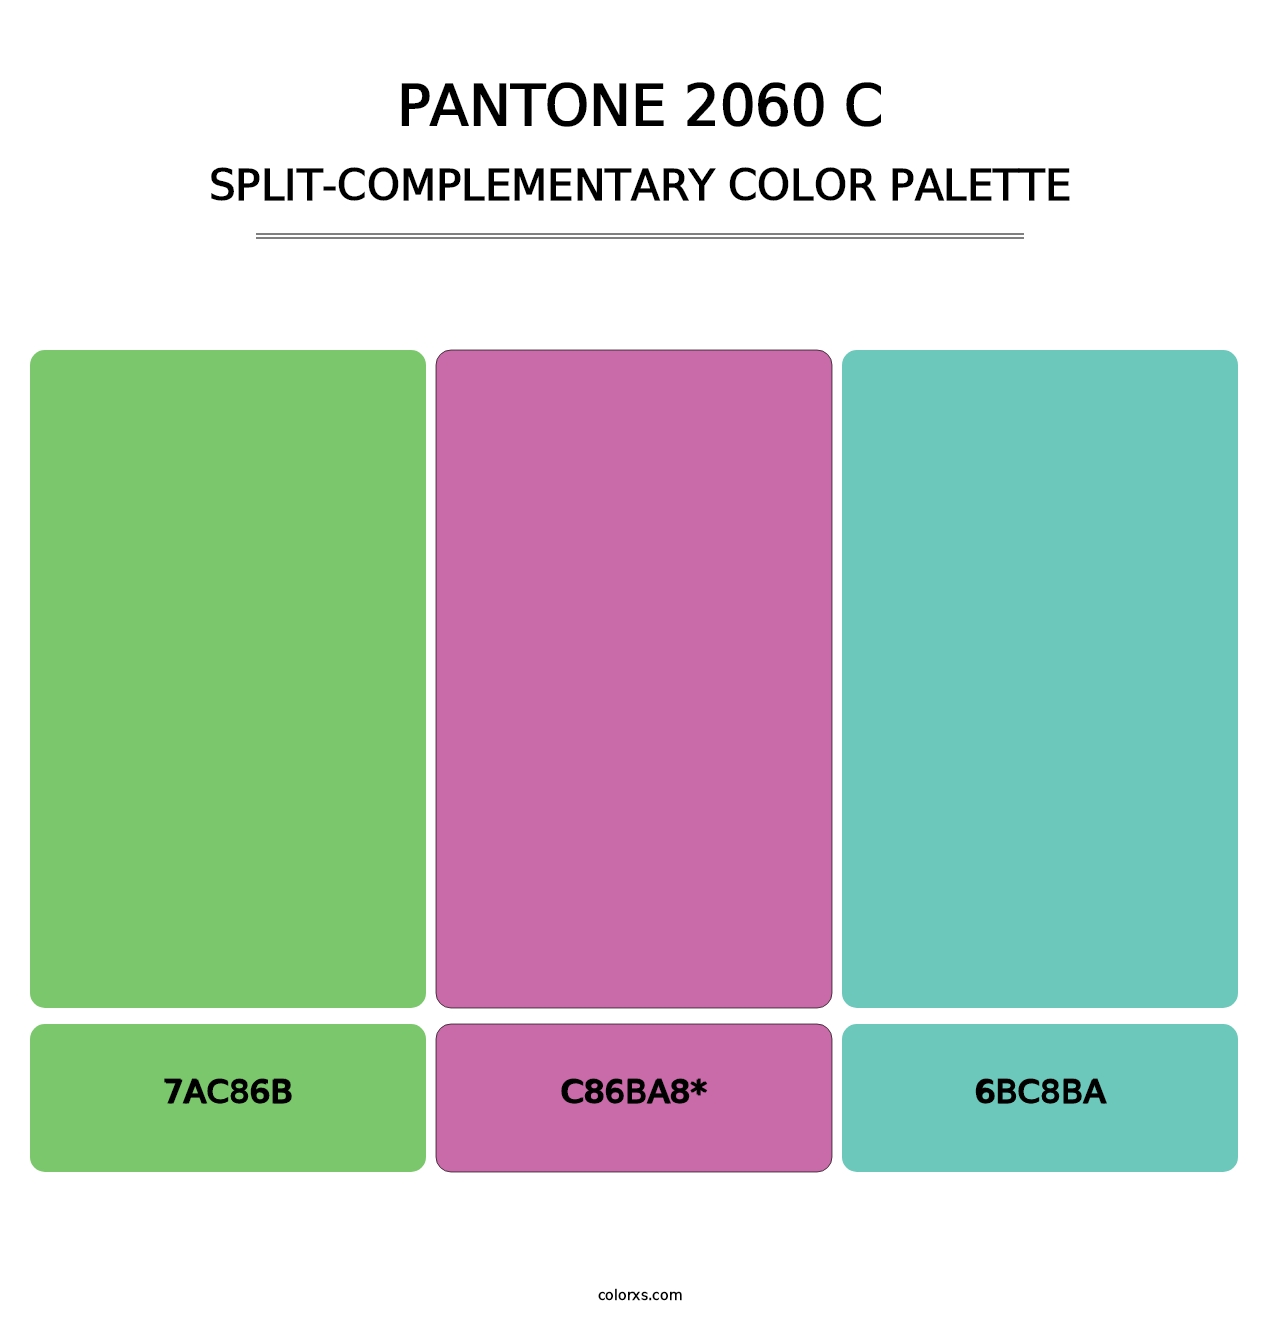 PANTONE 2060 C - Split-Complementary Color Palette